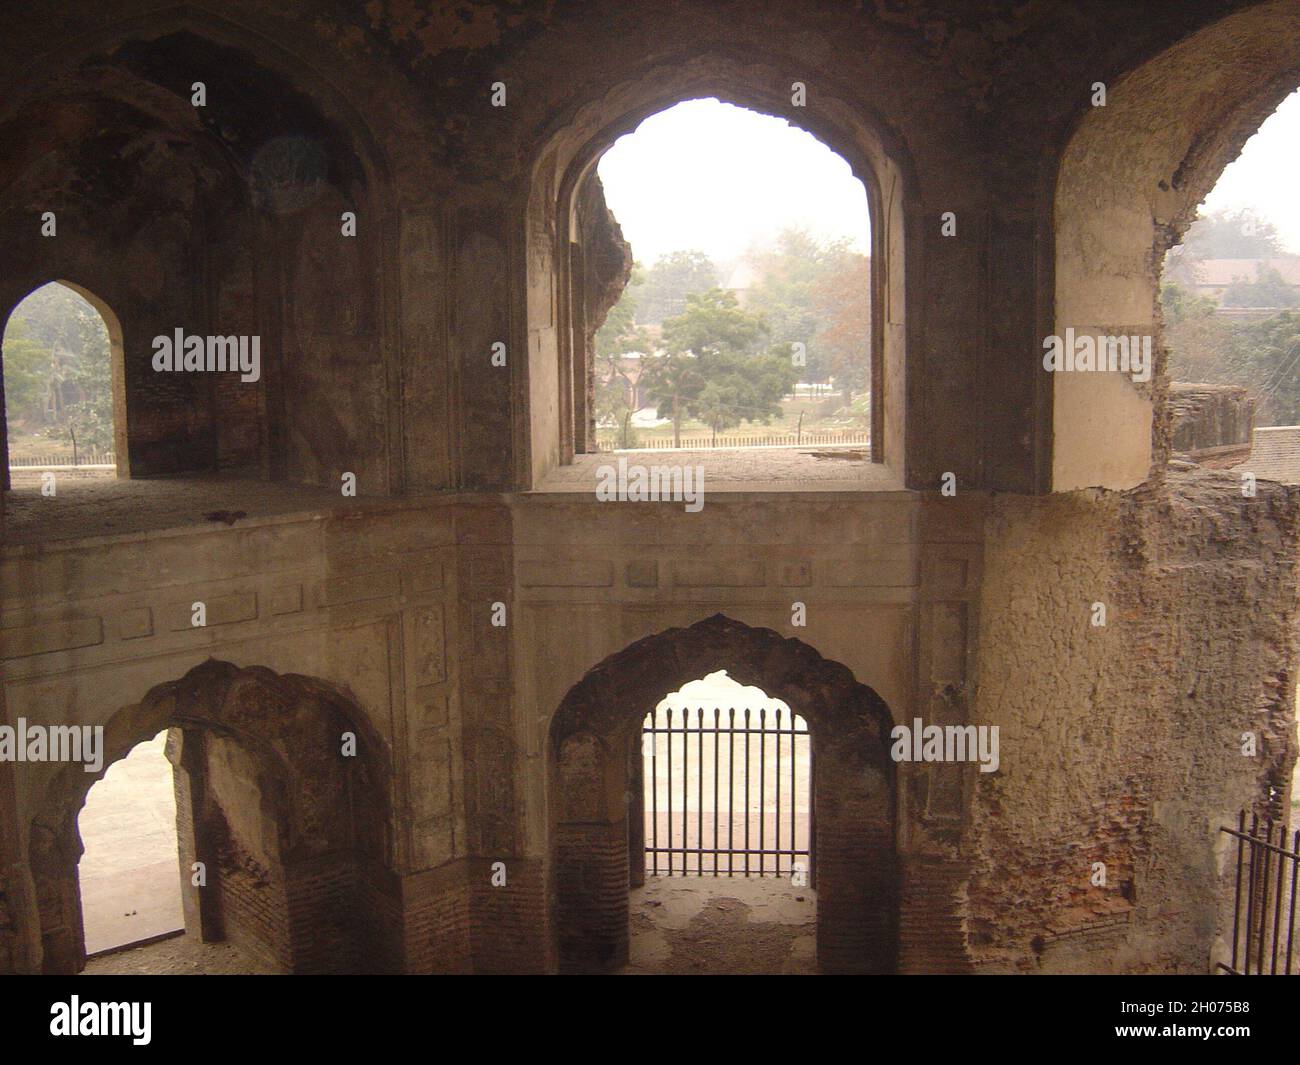 Vue intérieure sur la tombe de Khan-e-Jahan Bahadur Zafar Jang Kokaltash.Kokaltash était amon les nobles de l'empereur Mughal Aurangzeb Alamgir.Il est mort en 1697 et le tombeau doit avoir été construit dans la même période.Le mausolée est octogonal en plan avec de hautes arches de chaque côté et se tient sur une plate-forme octogonale.L'ensemble du bâtiment est construit en briques coupées sans aucune utilisation de pierre de sable rouge qui le rend important parmi les bâtiments de cette période dans la ville de Lahore, Pakistan.3 février 2007. Banque D'Images